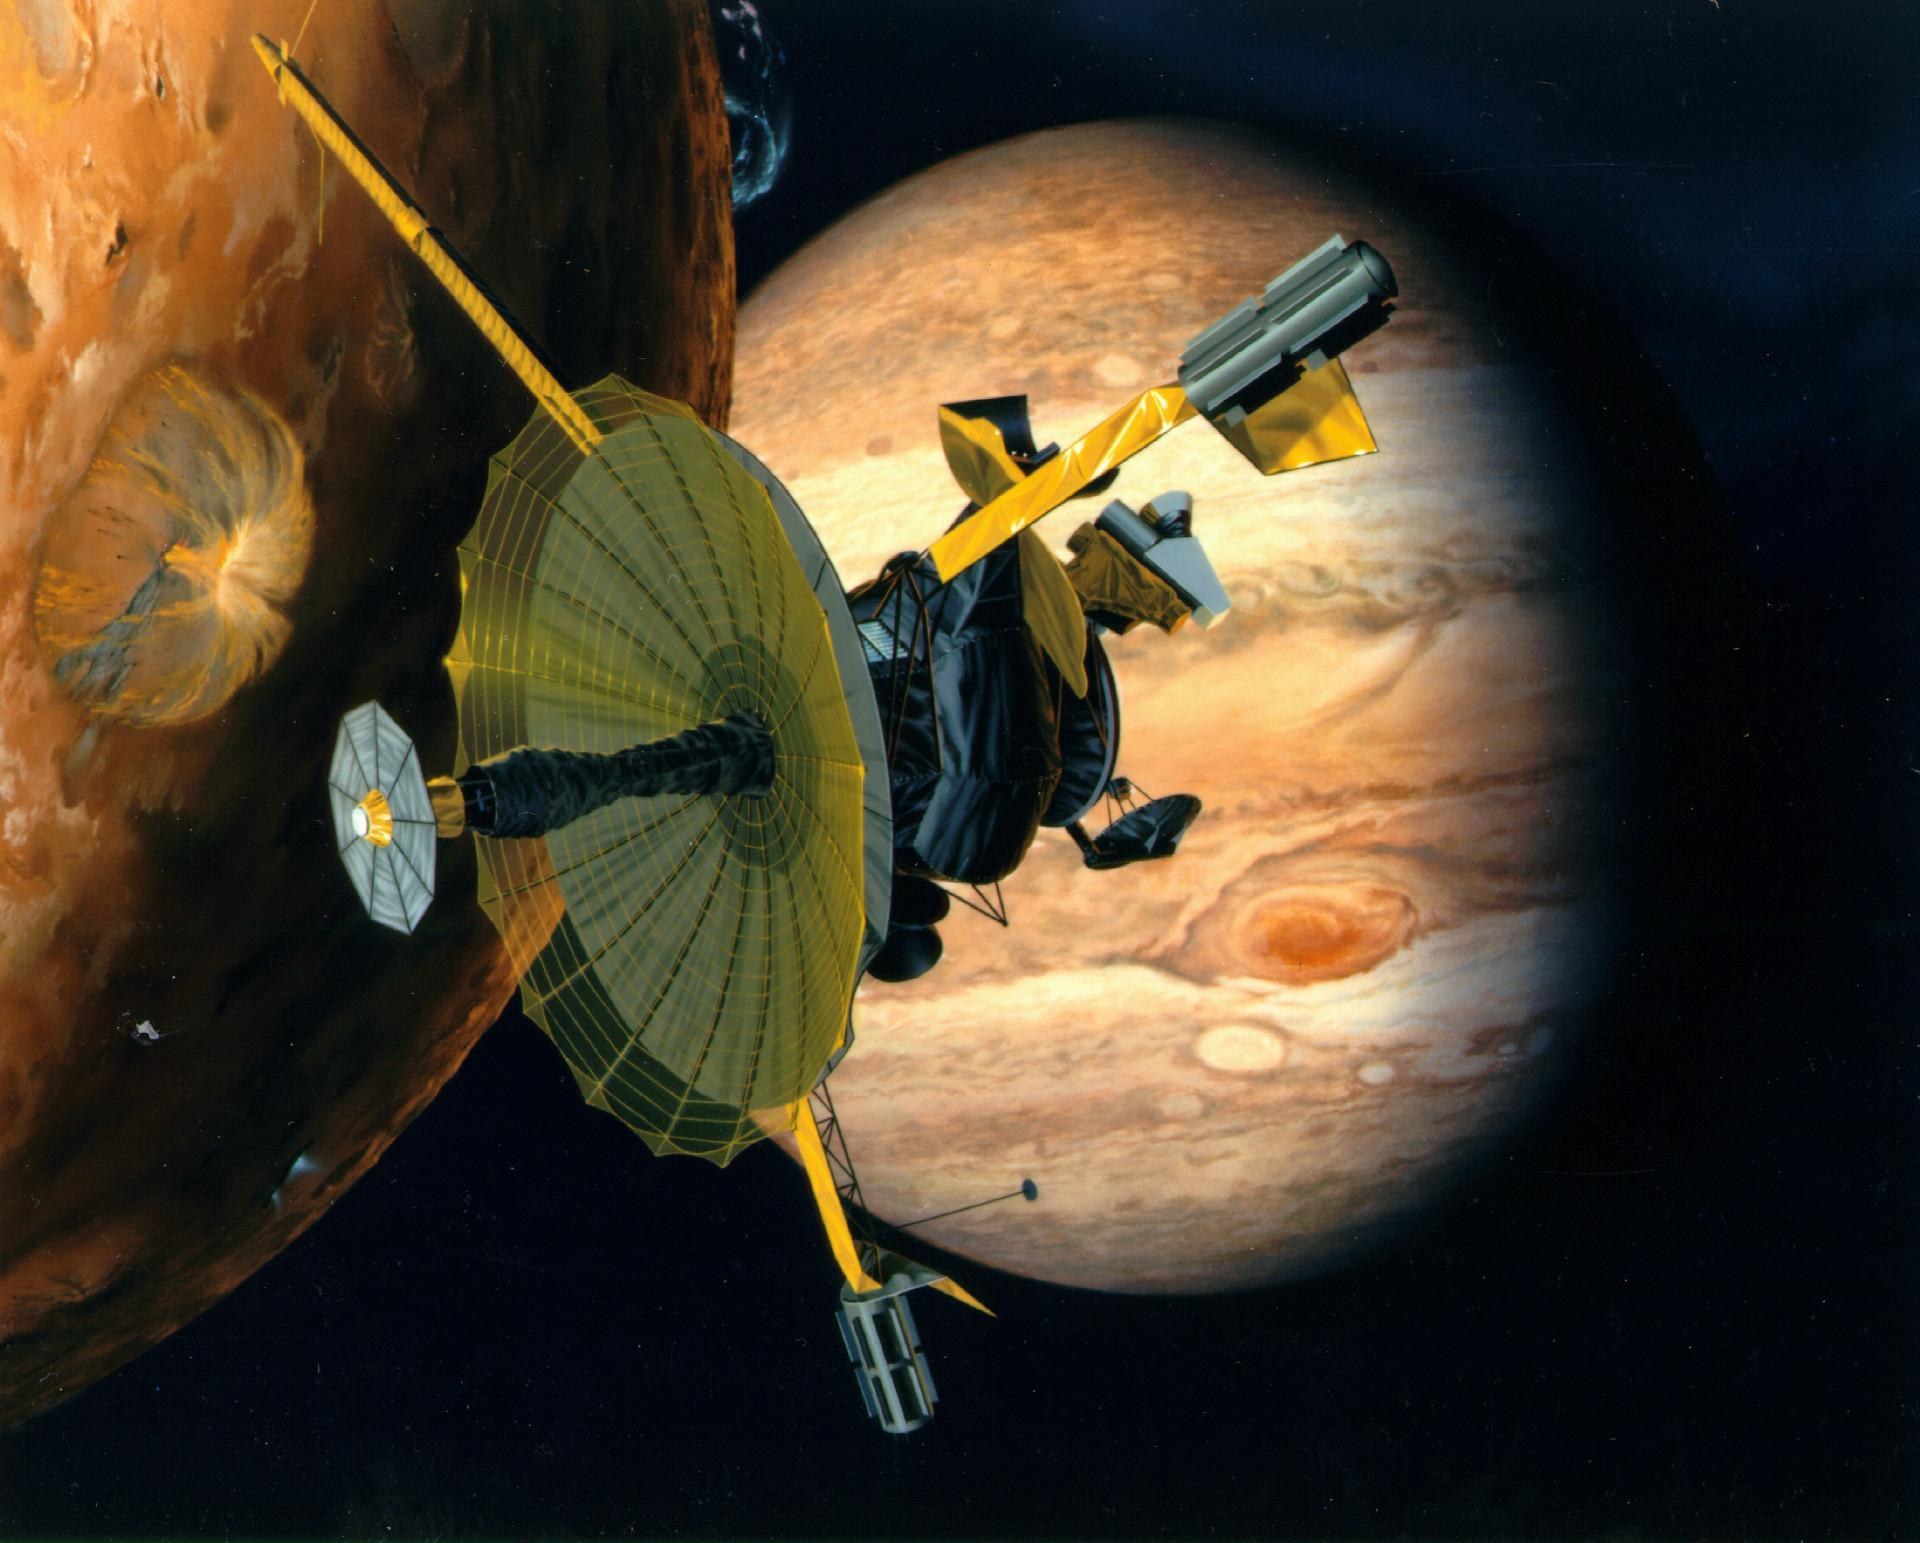 Galileo Jupiter spacecraft